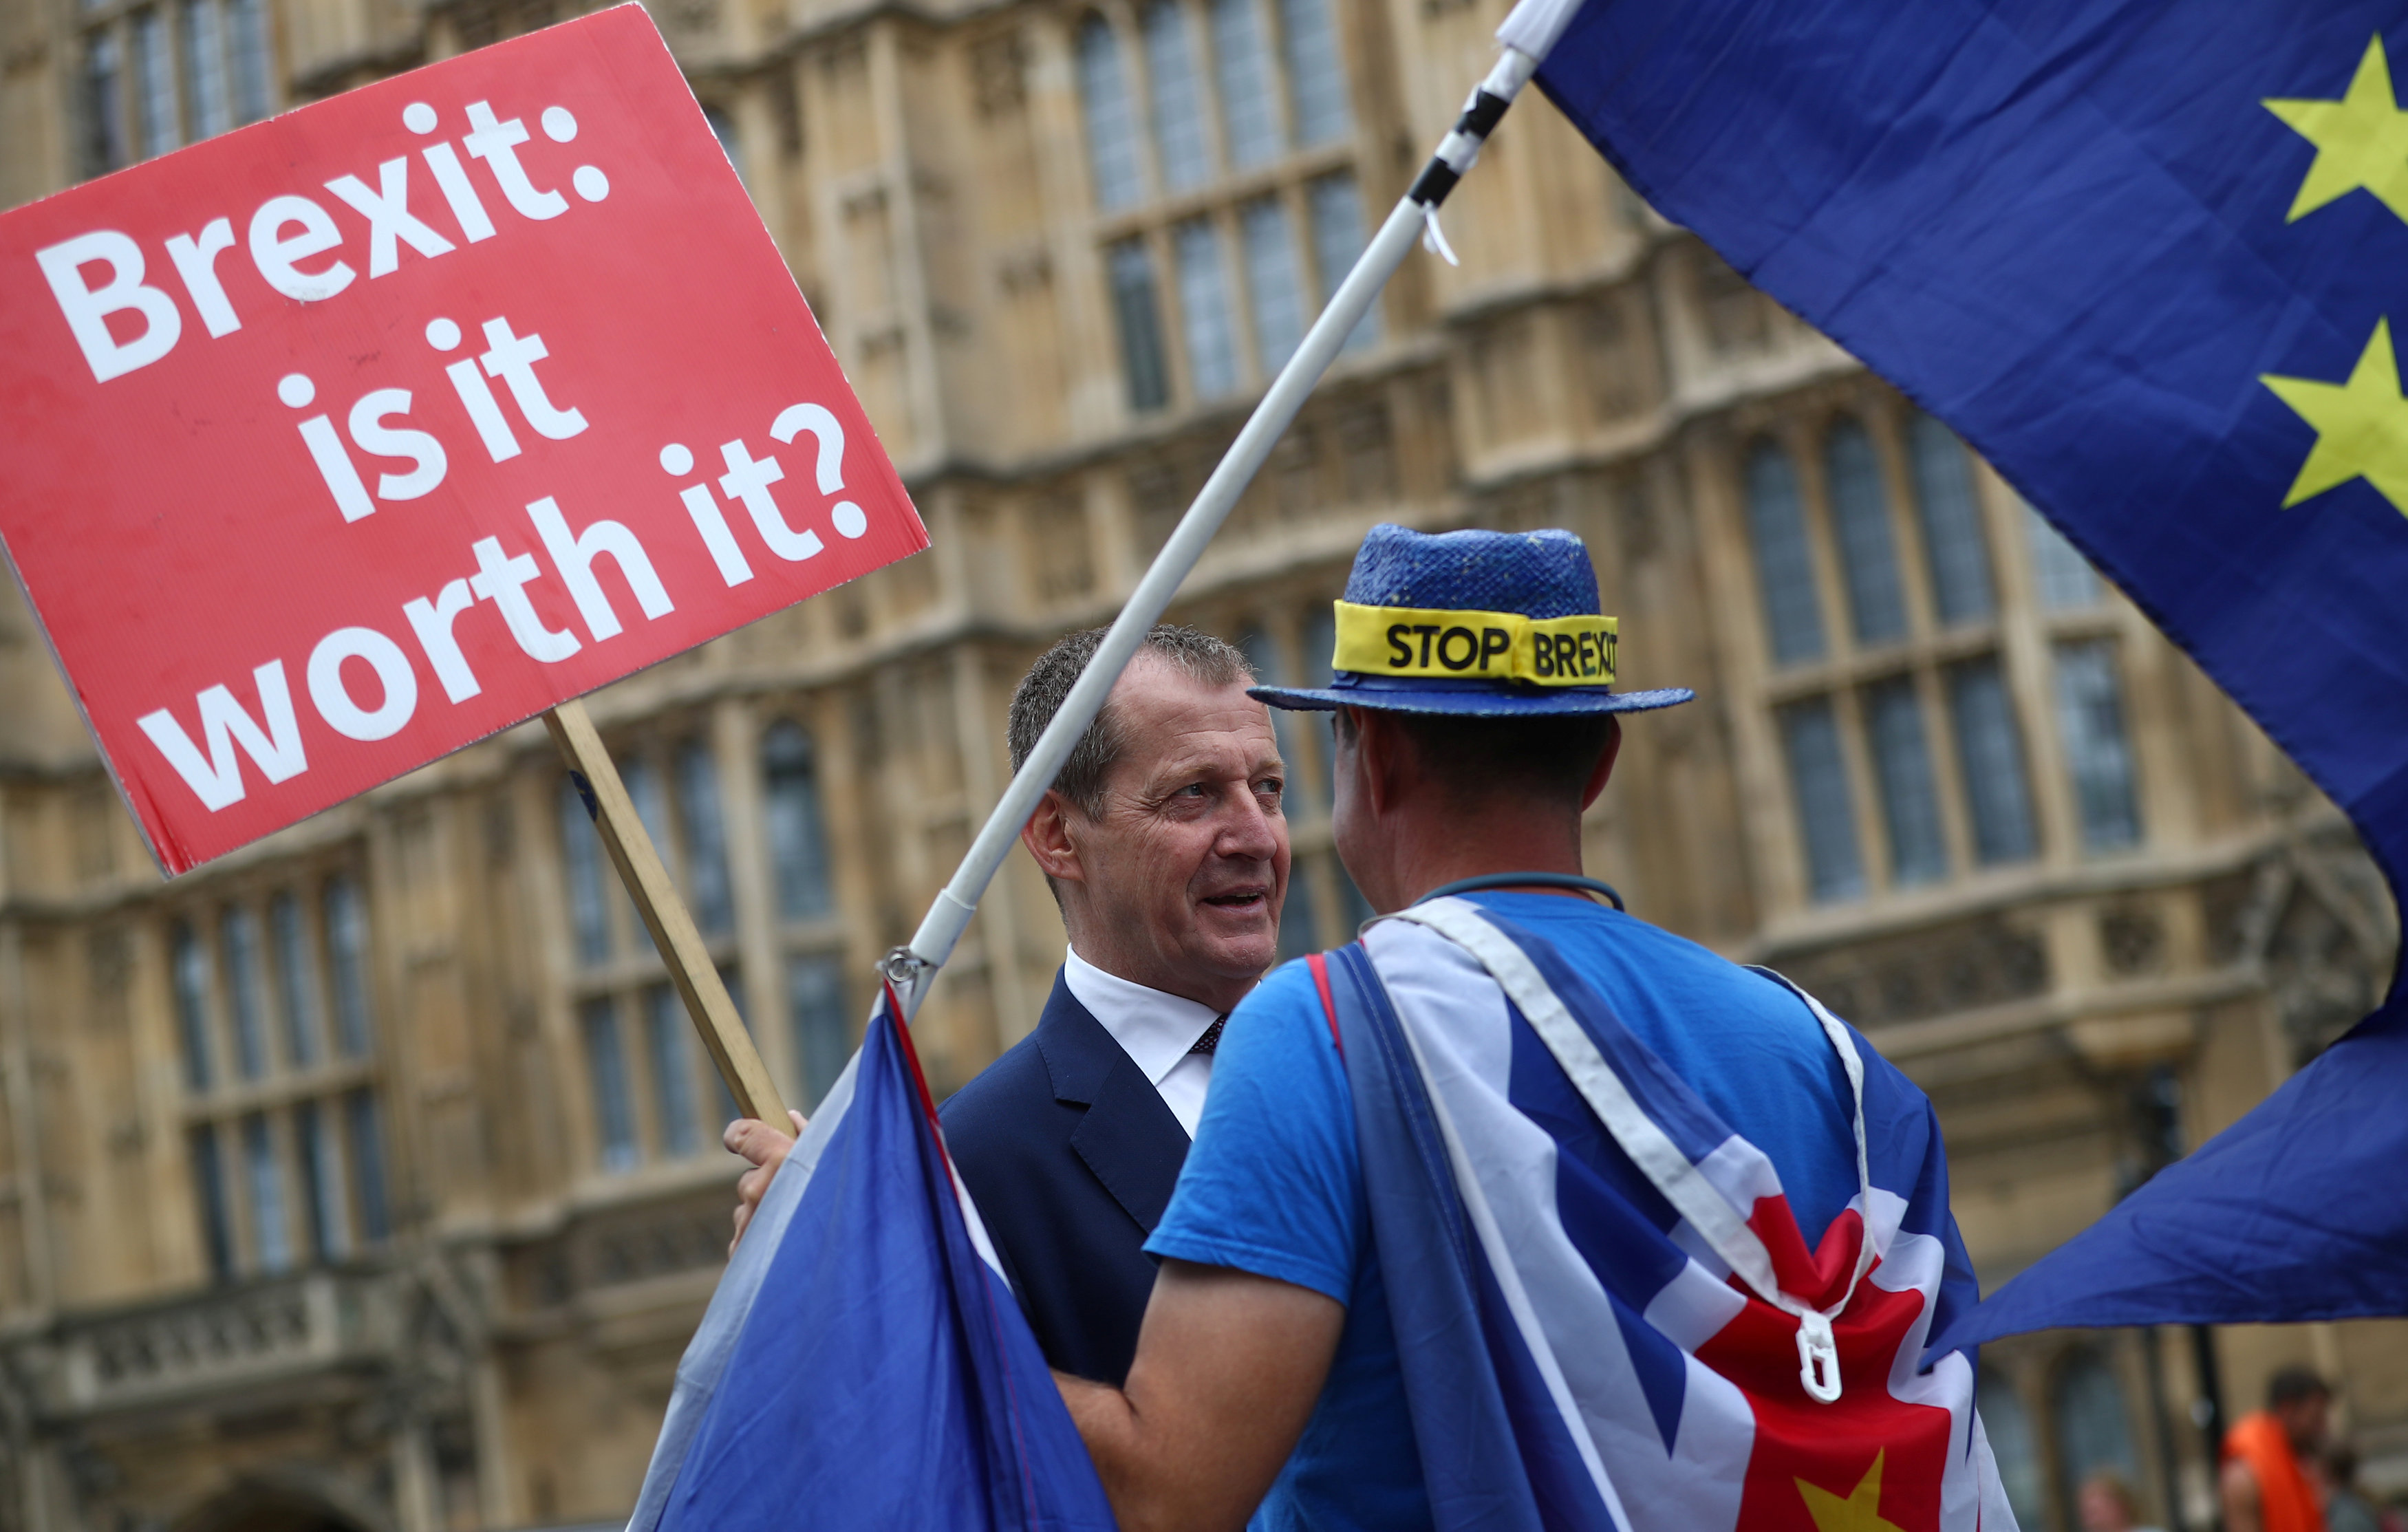 حوار بين متظاهر ونائب عن حزب العمال فى البرلمان البريطانى